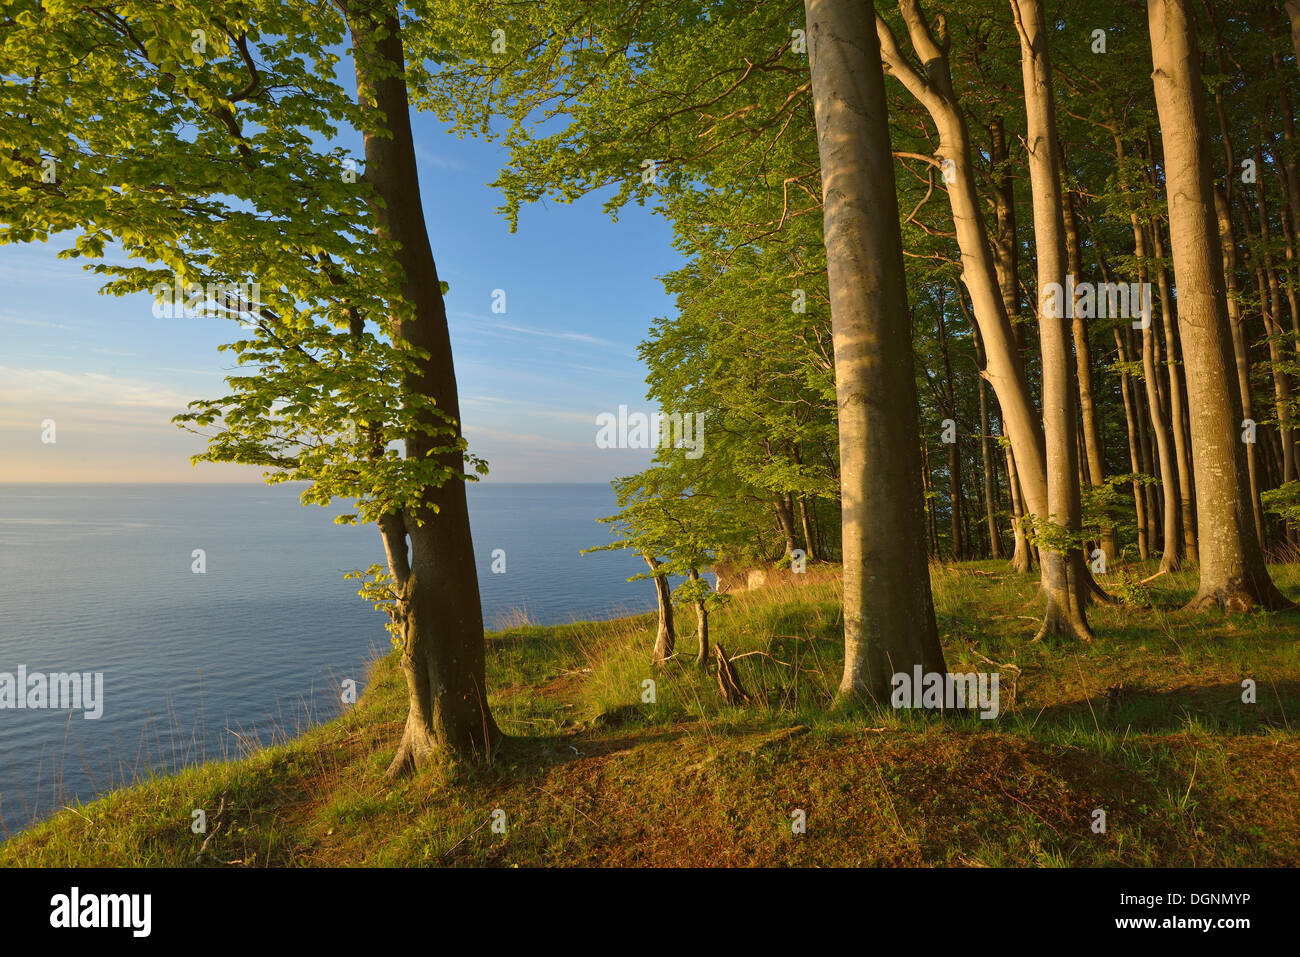 Foresta di faggio sul bordo della costa ripida nella prima luce del mattino, Dranske, Meclemburgo-Pomerania Occidentale, Germania Foto Stock